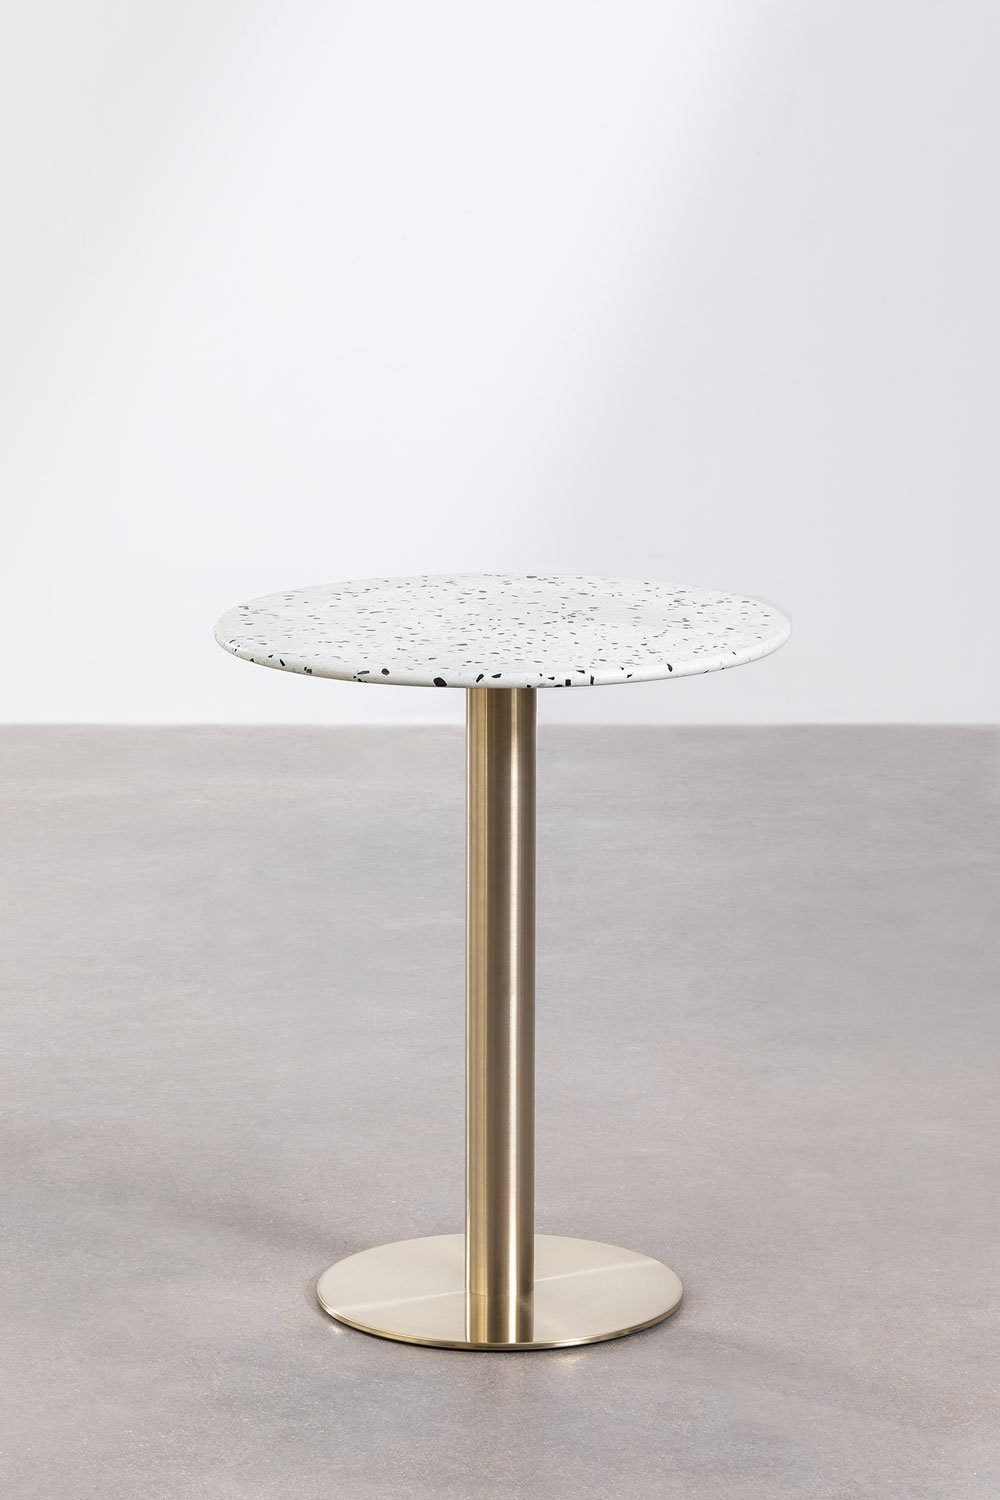 Table de Bar Ronde en Terrazzo (Ø60 cm) Malibu, image de la galerie 1